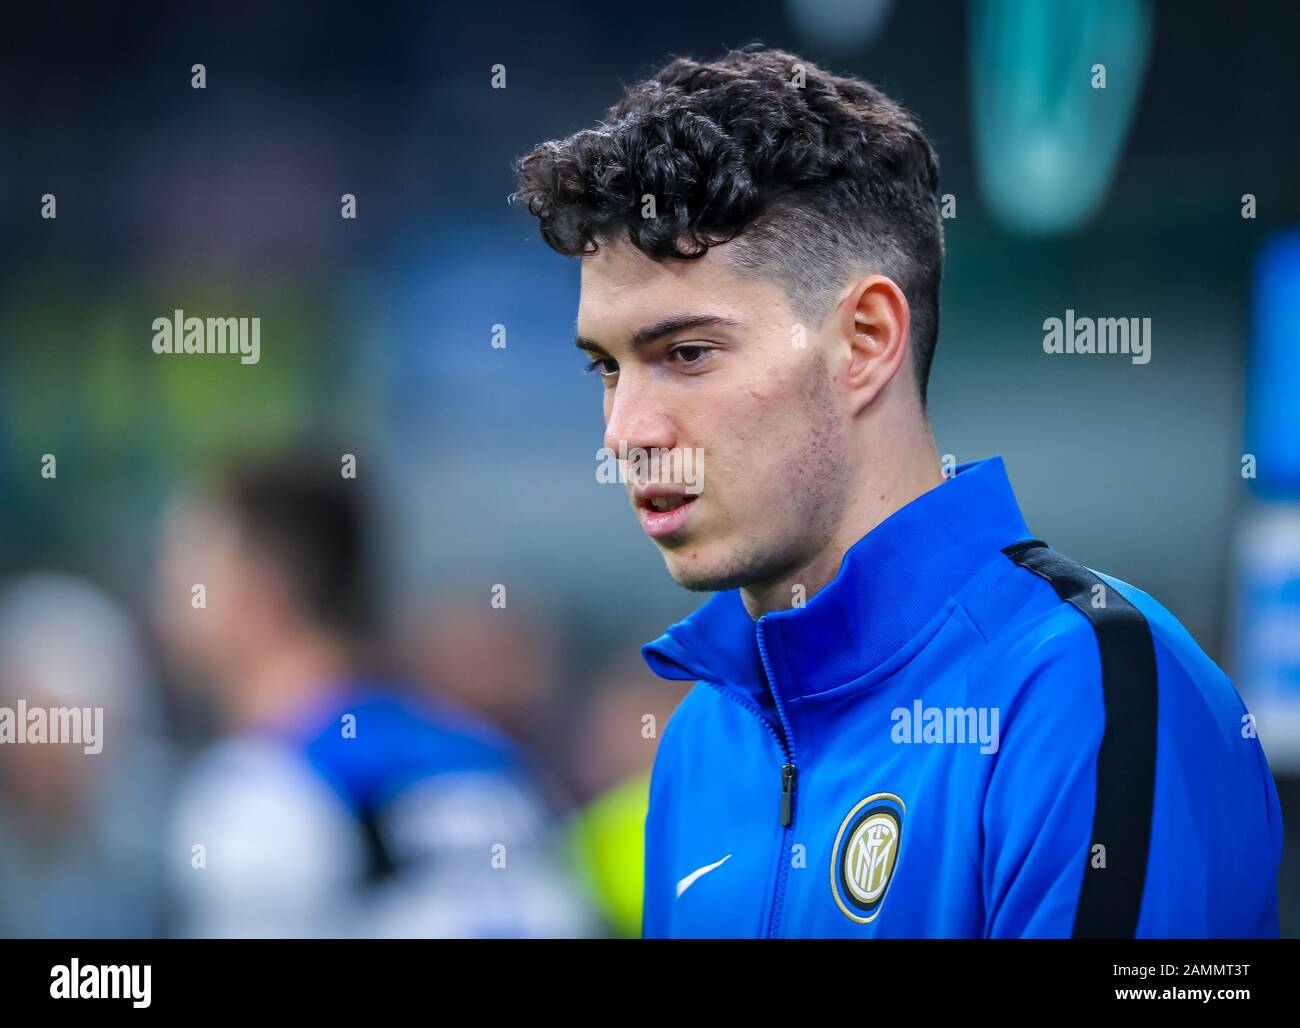 Alessandro bastoni di fc internazionale durante Inter vs Atalanta, Milano, Italia, 11 gennaio 2020, Campionato Italiano Calcio Serie A Men Foto Stock